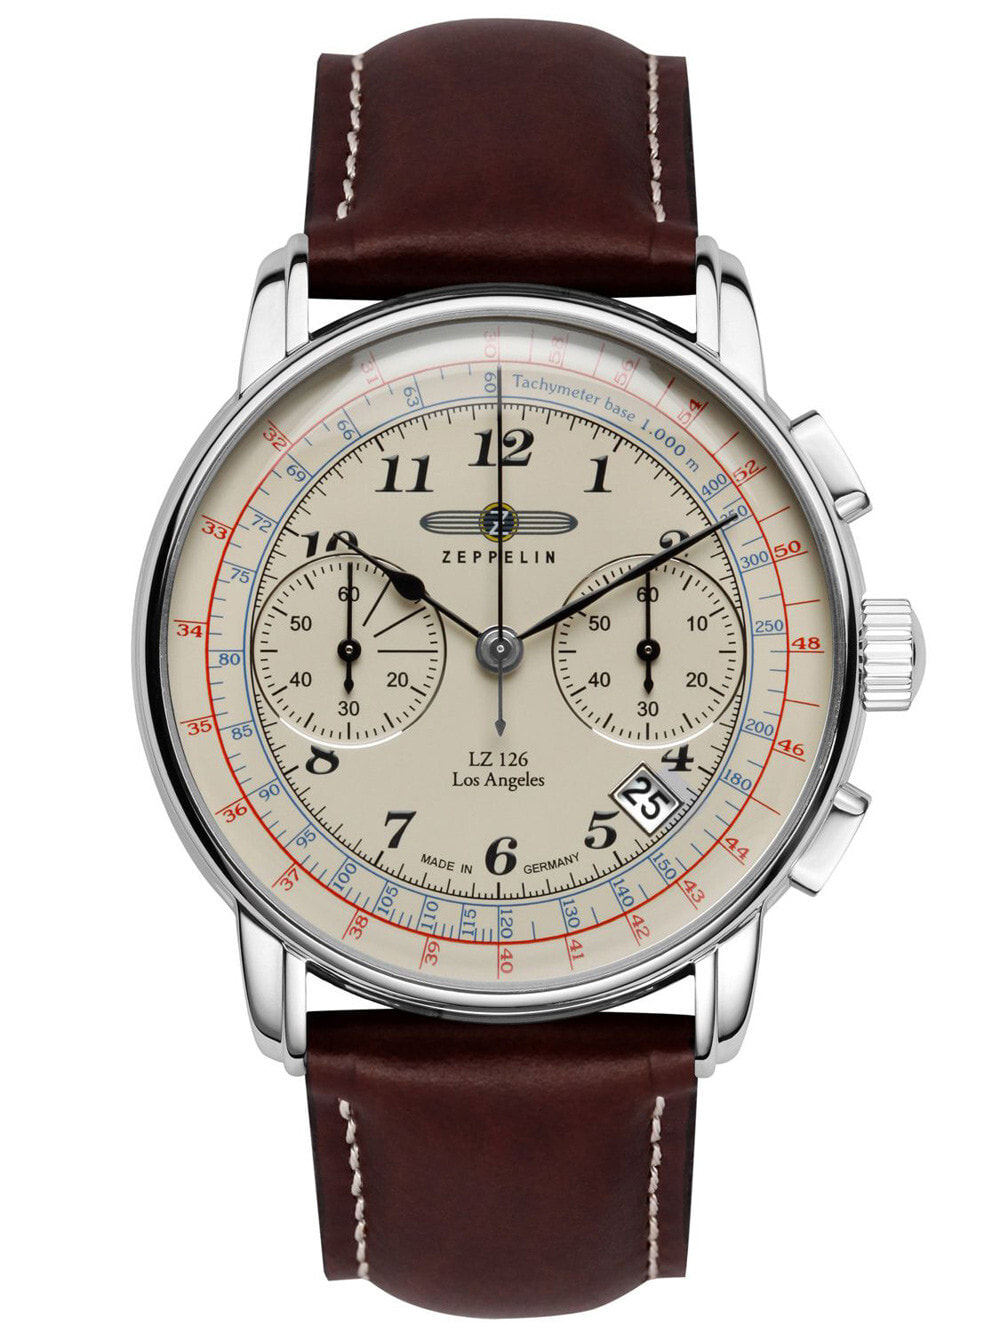 Мужские наручные часы с коричневым кожаным ремешком Zeppelin 7614-5 LZ-127 Chronograph 43mm 5ATM